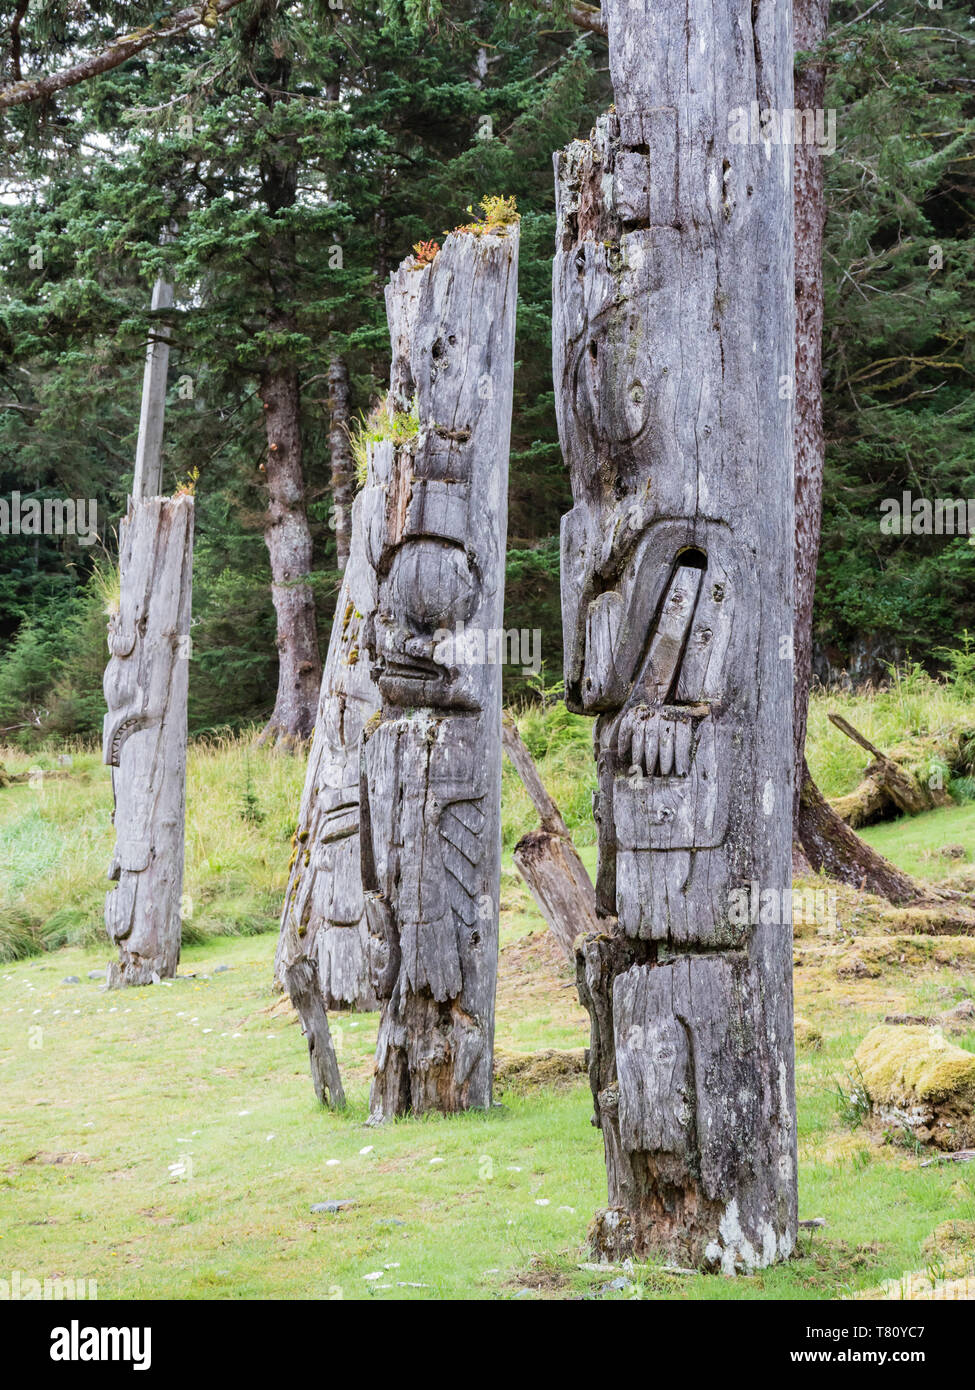 Les totems de l'île sgaang Gwaii, UNESCO World Heritage Site, Haida Gwaii, en Colombie-Britannique, au Canada, en Amérique du Nord Banque D'Images